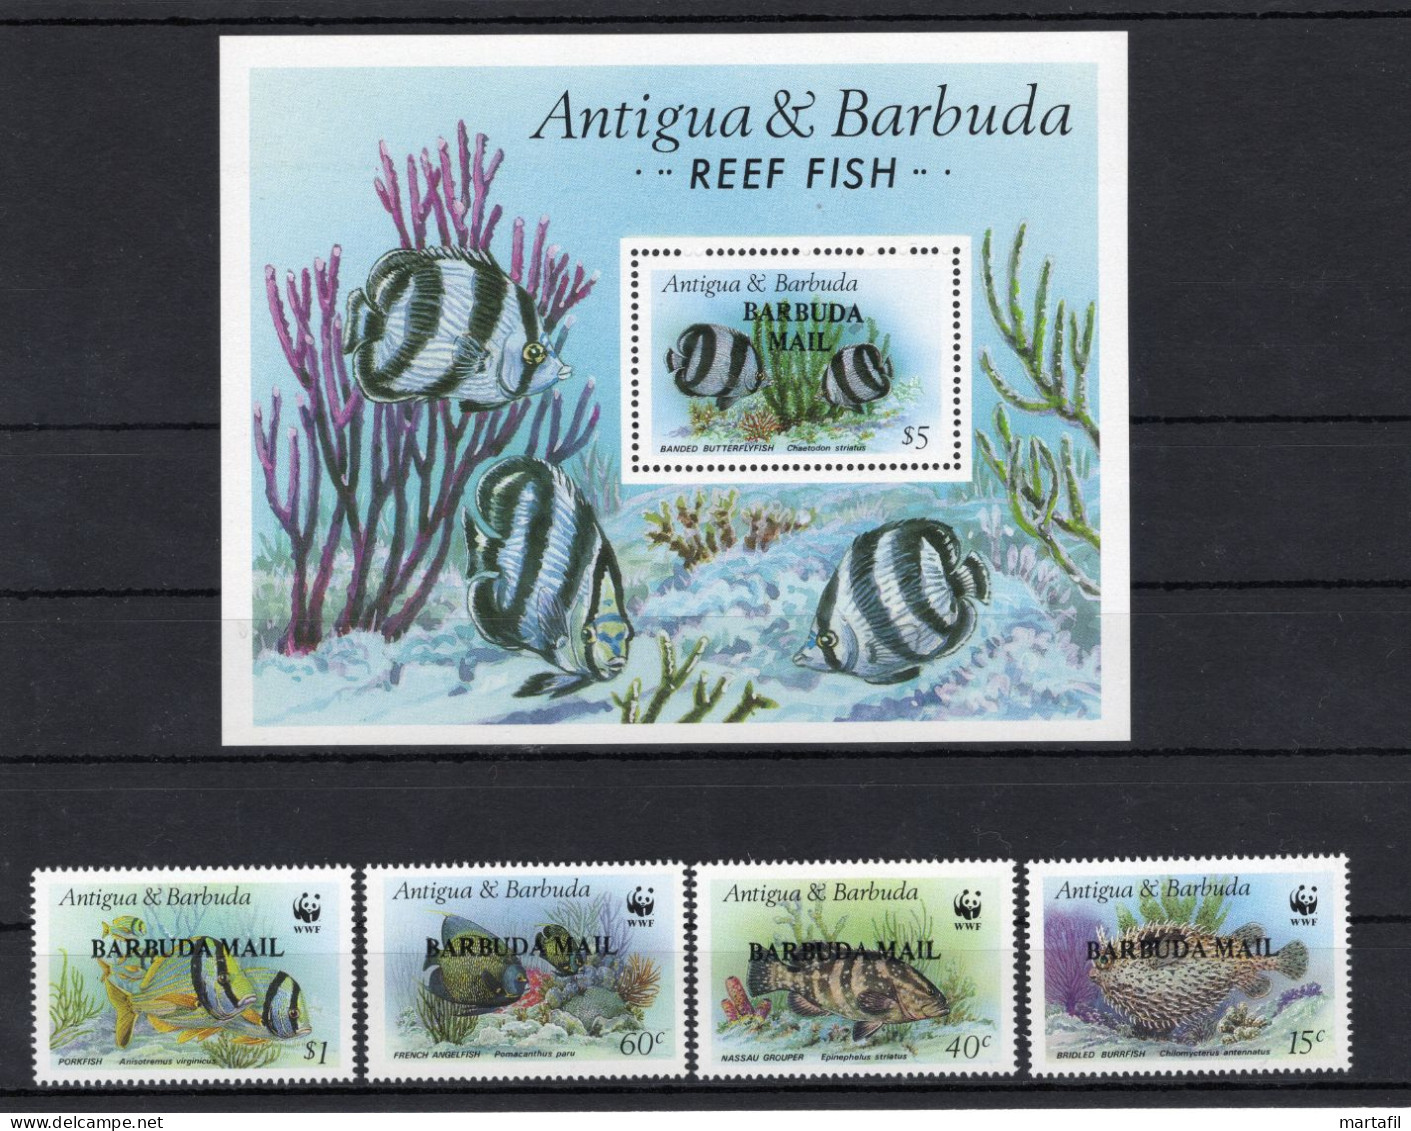 1987 BARBUDA "Antigua & Barbuda" WWF Reef Fish RARE SET MNH **, "Barbuda Mail" Overprint - Nuovi